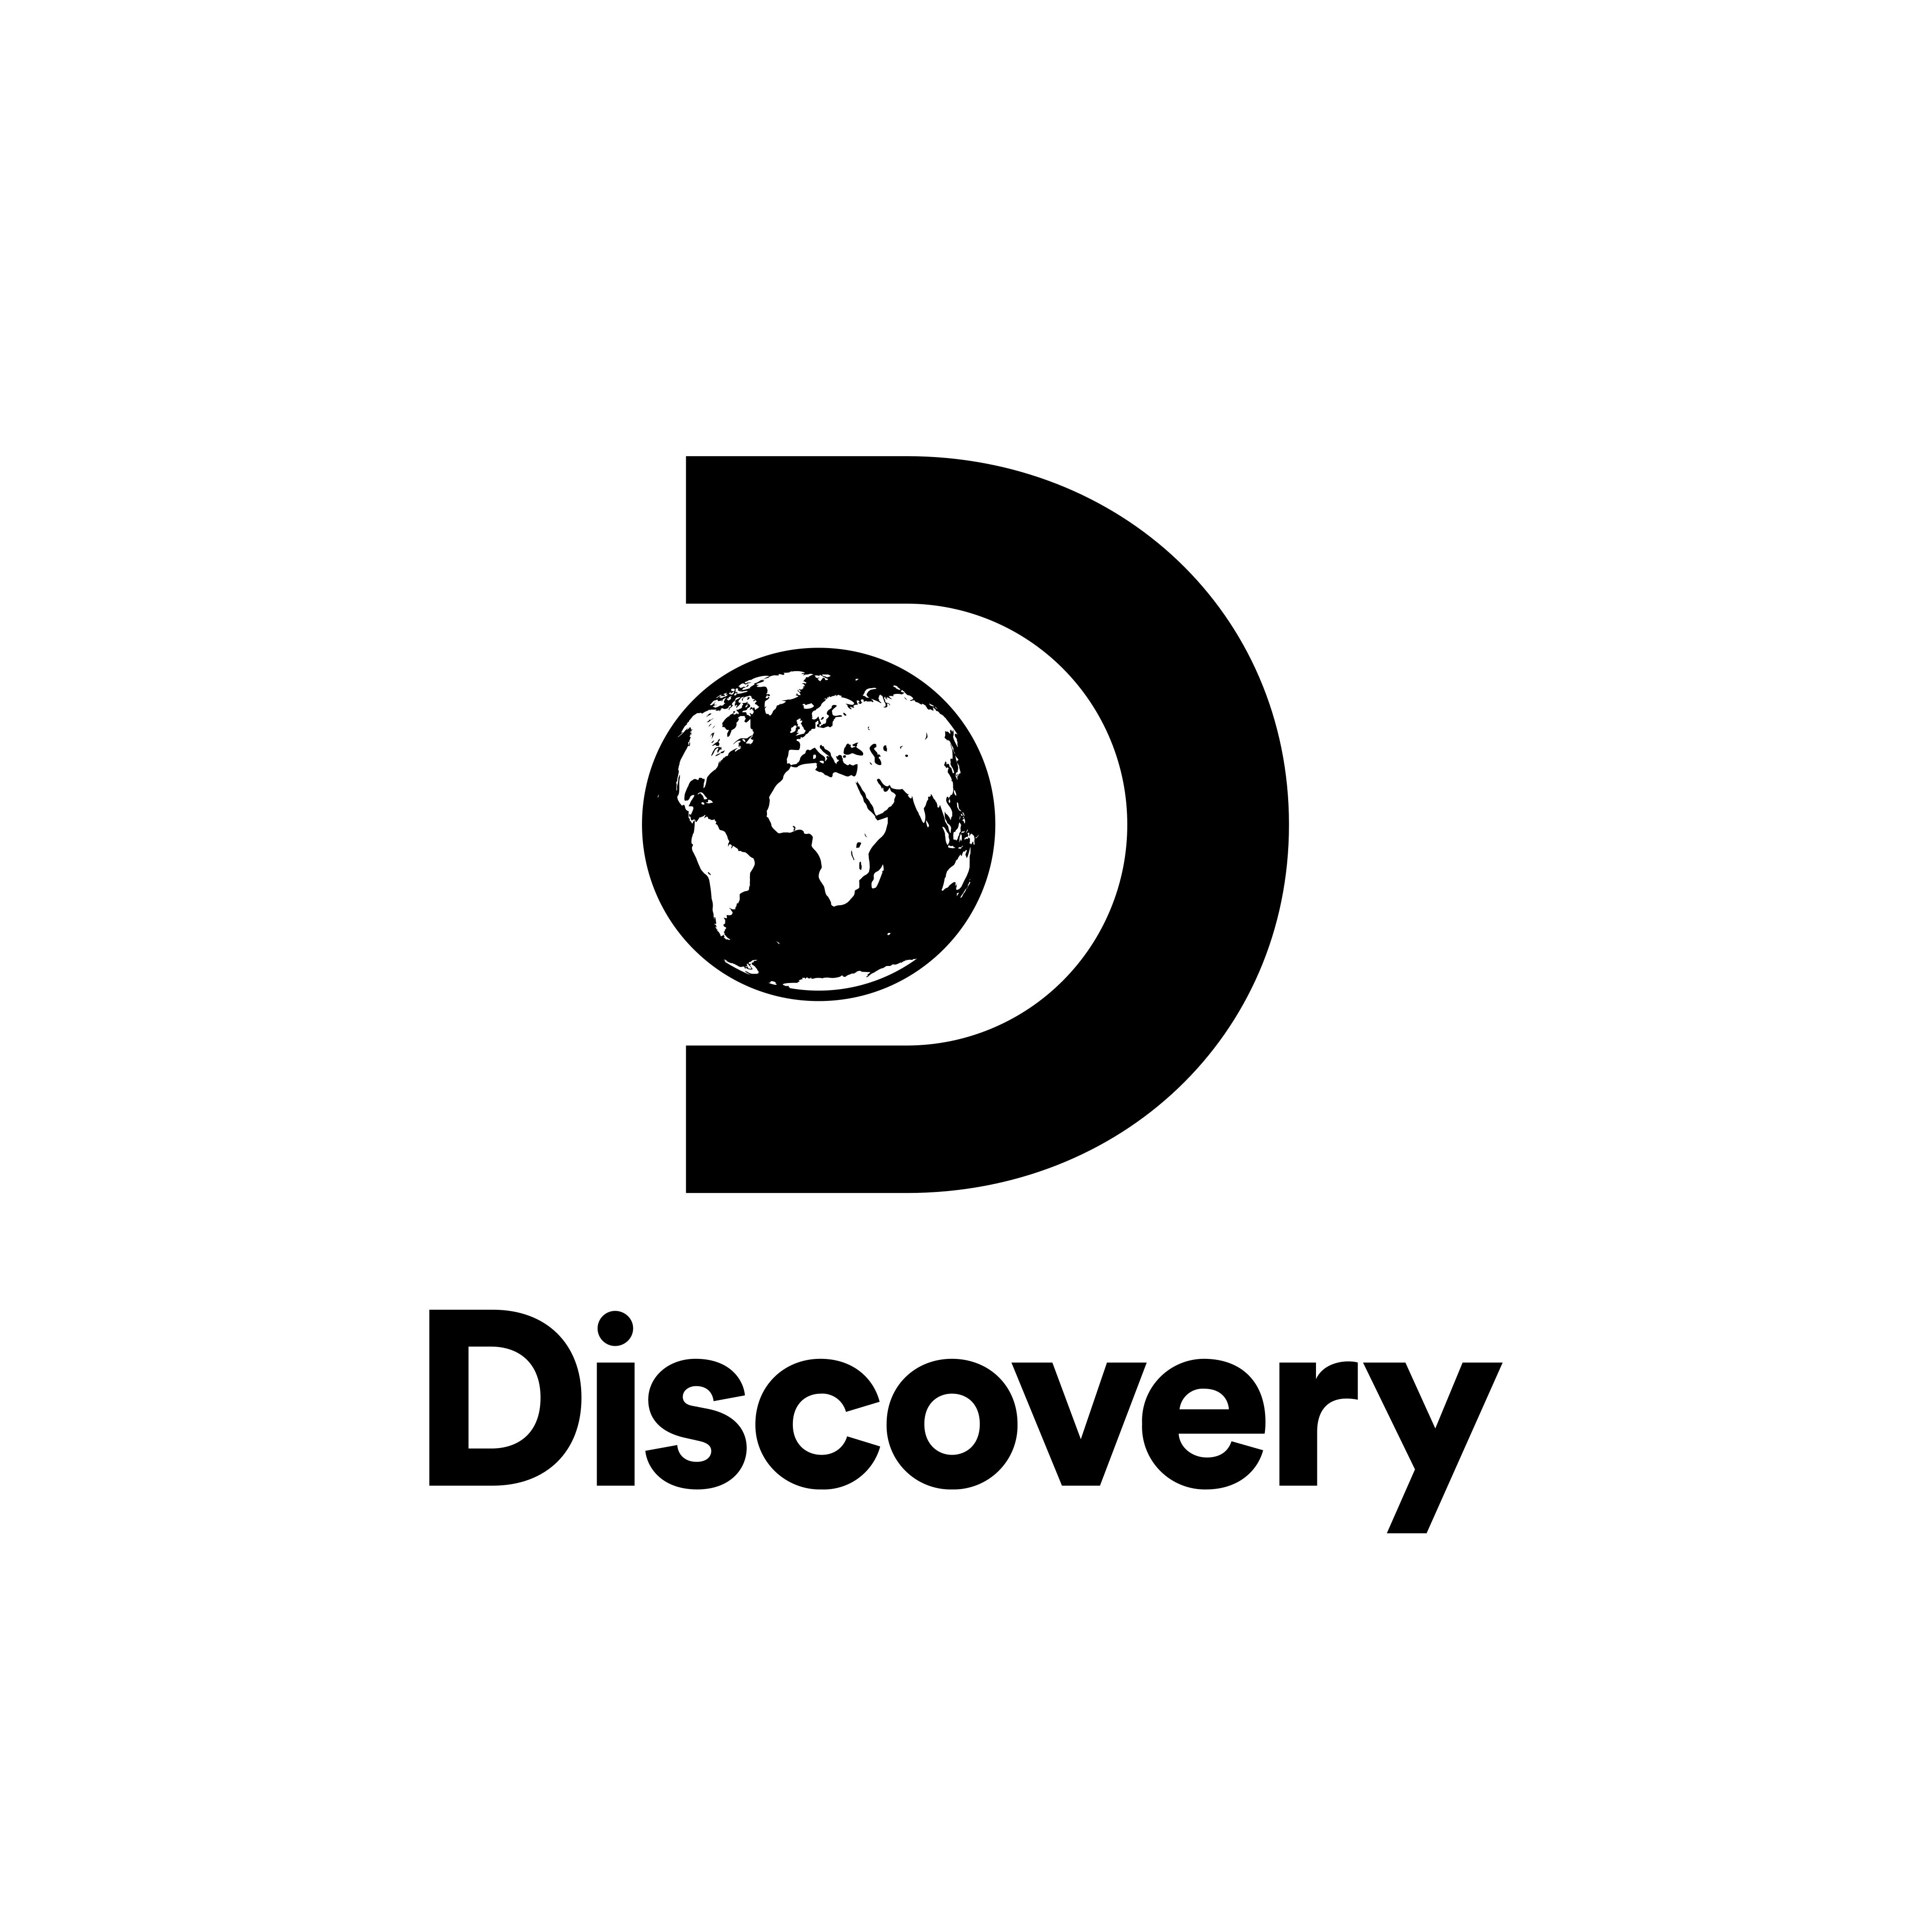 discovery channel logo 0 - Discovery Channel Logo